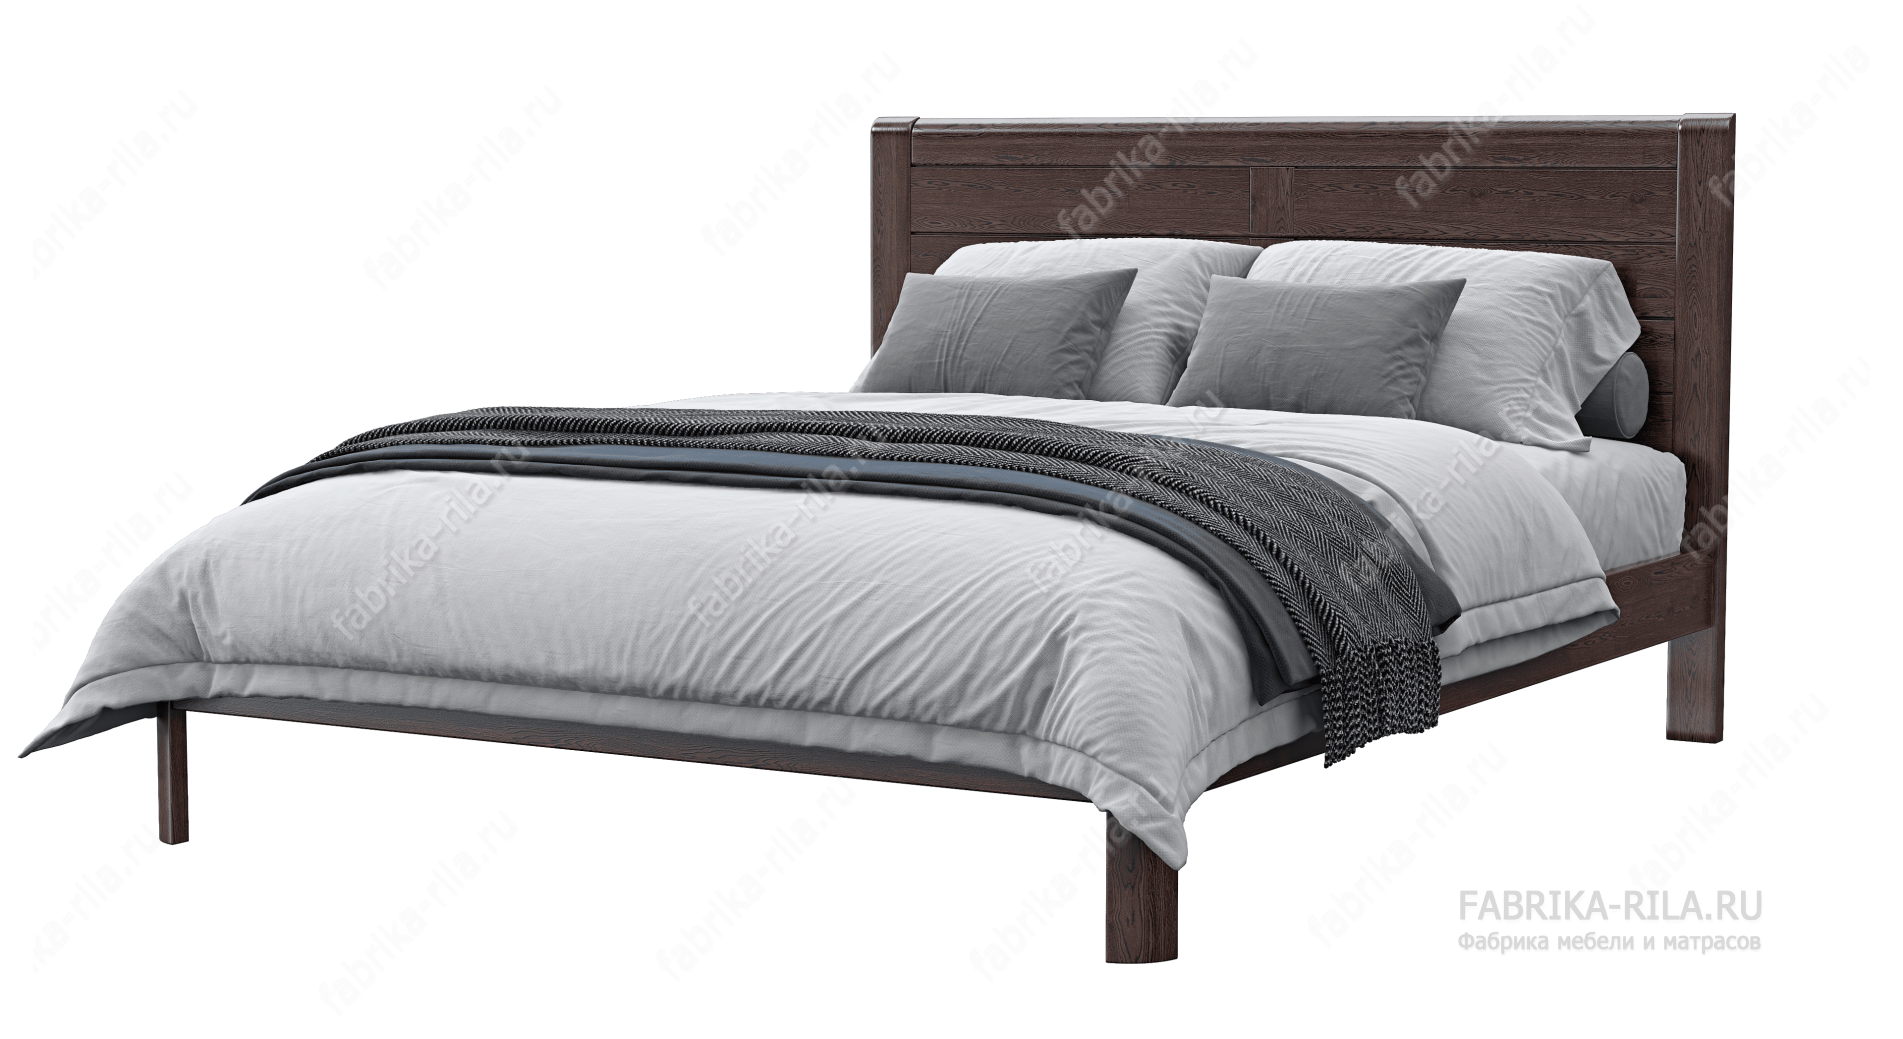 Кровать Riviera — 90x200 см. из сосны